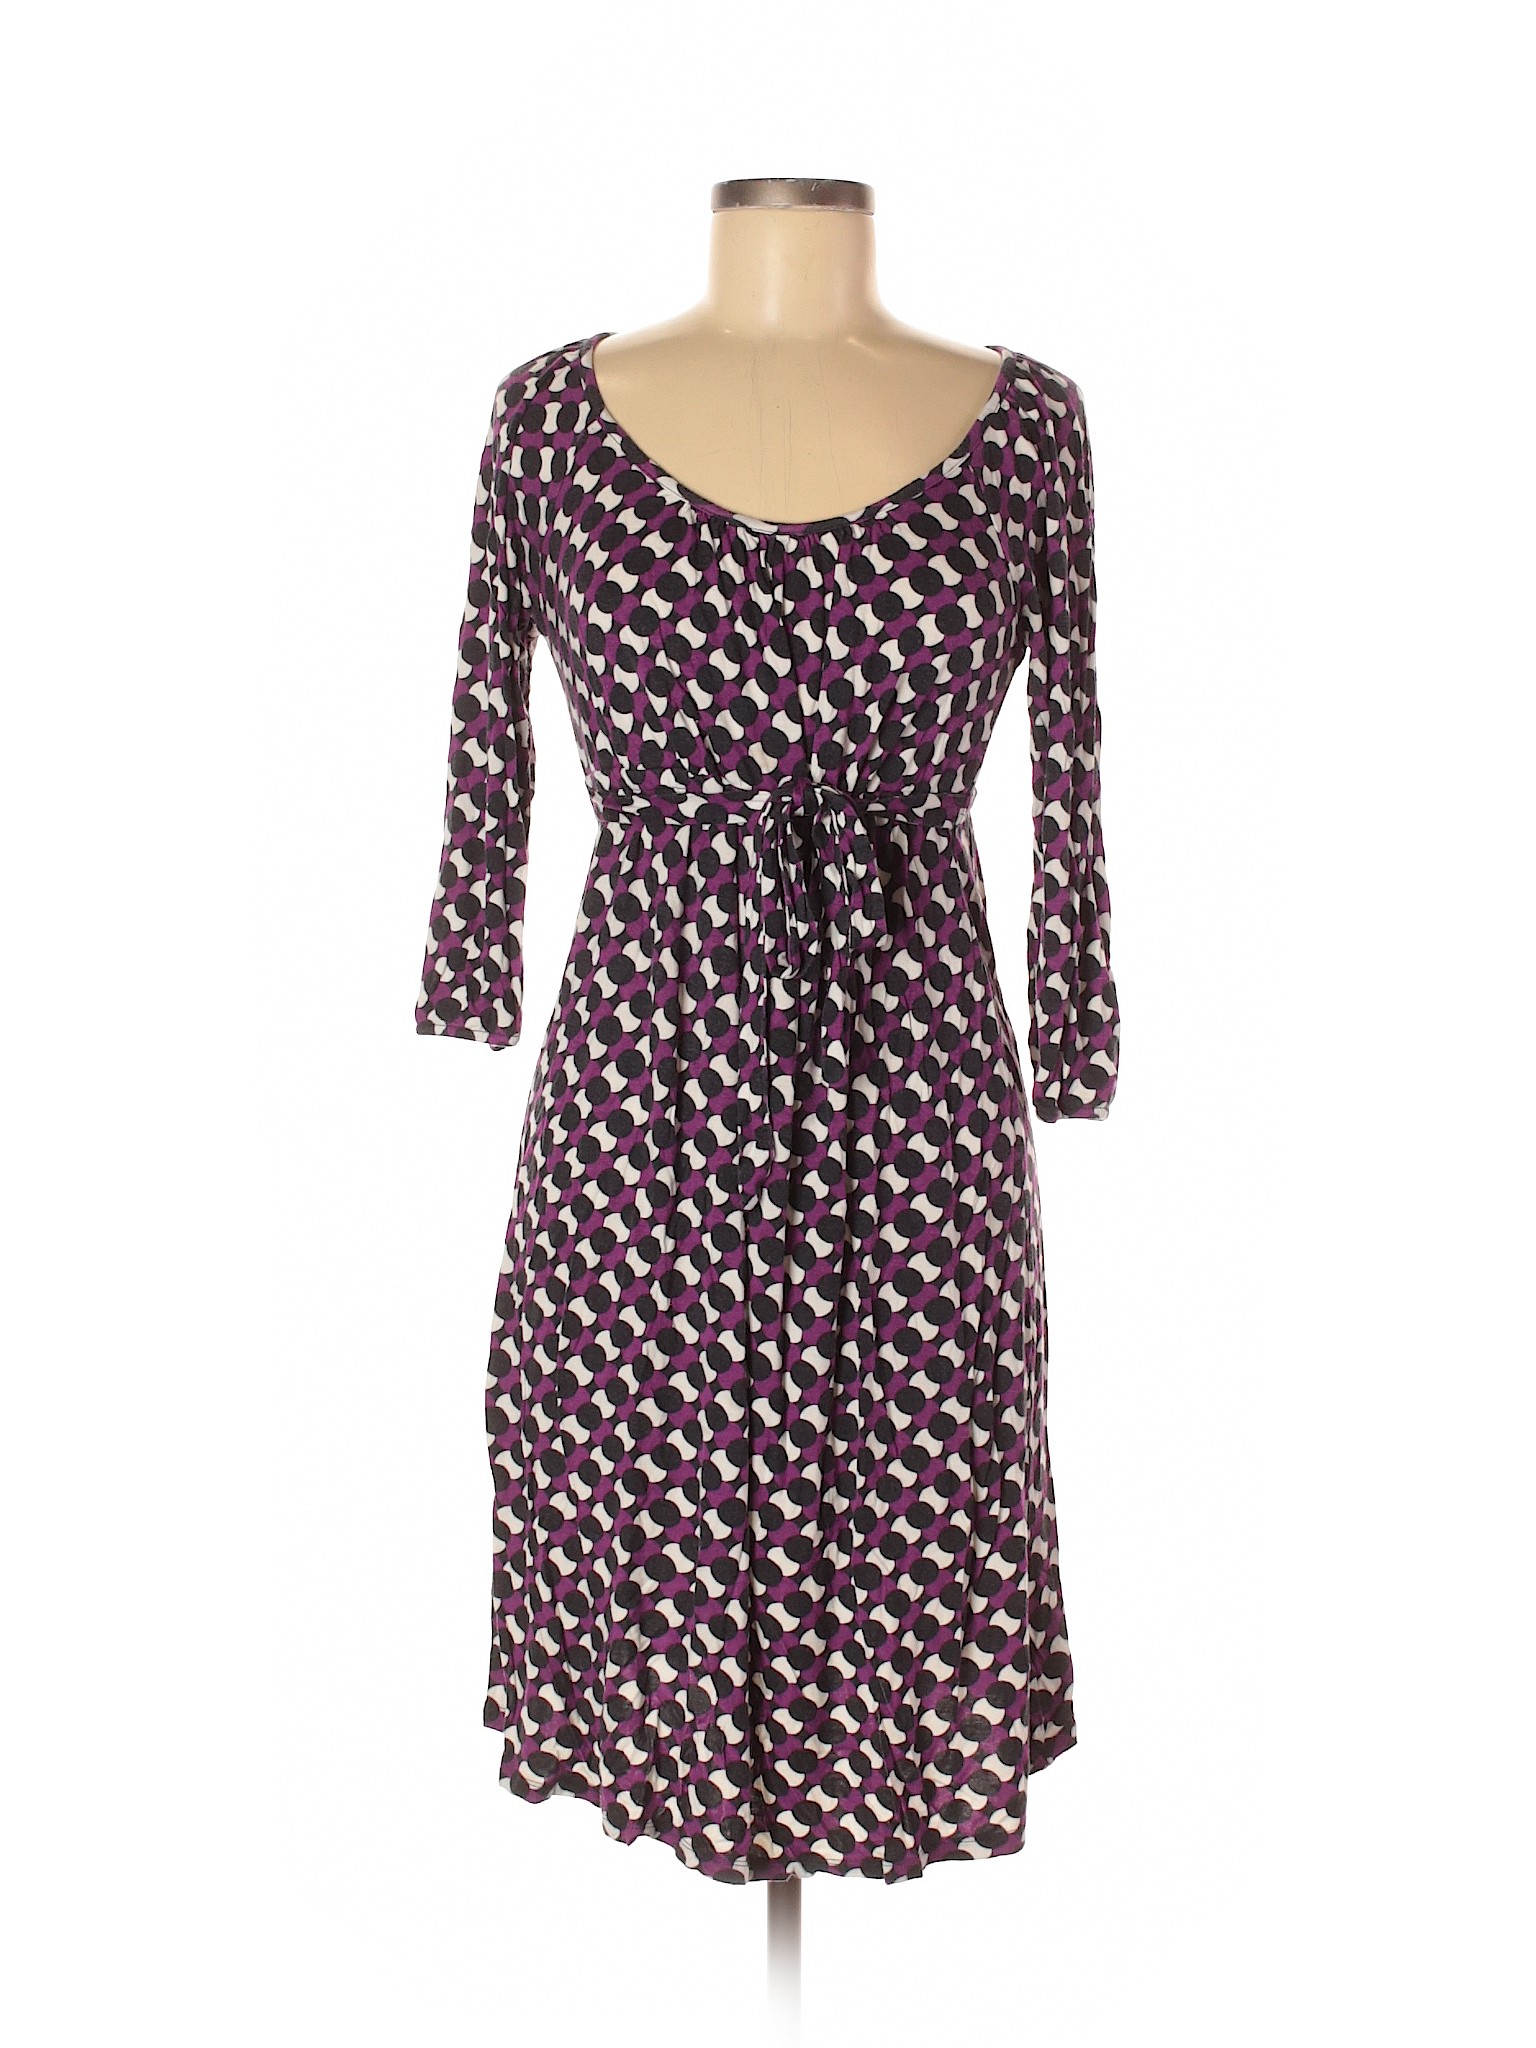 Old Navy Women Purple Casual Dress M | eBay